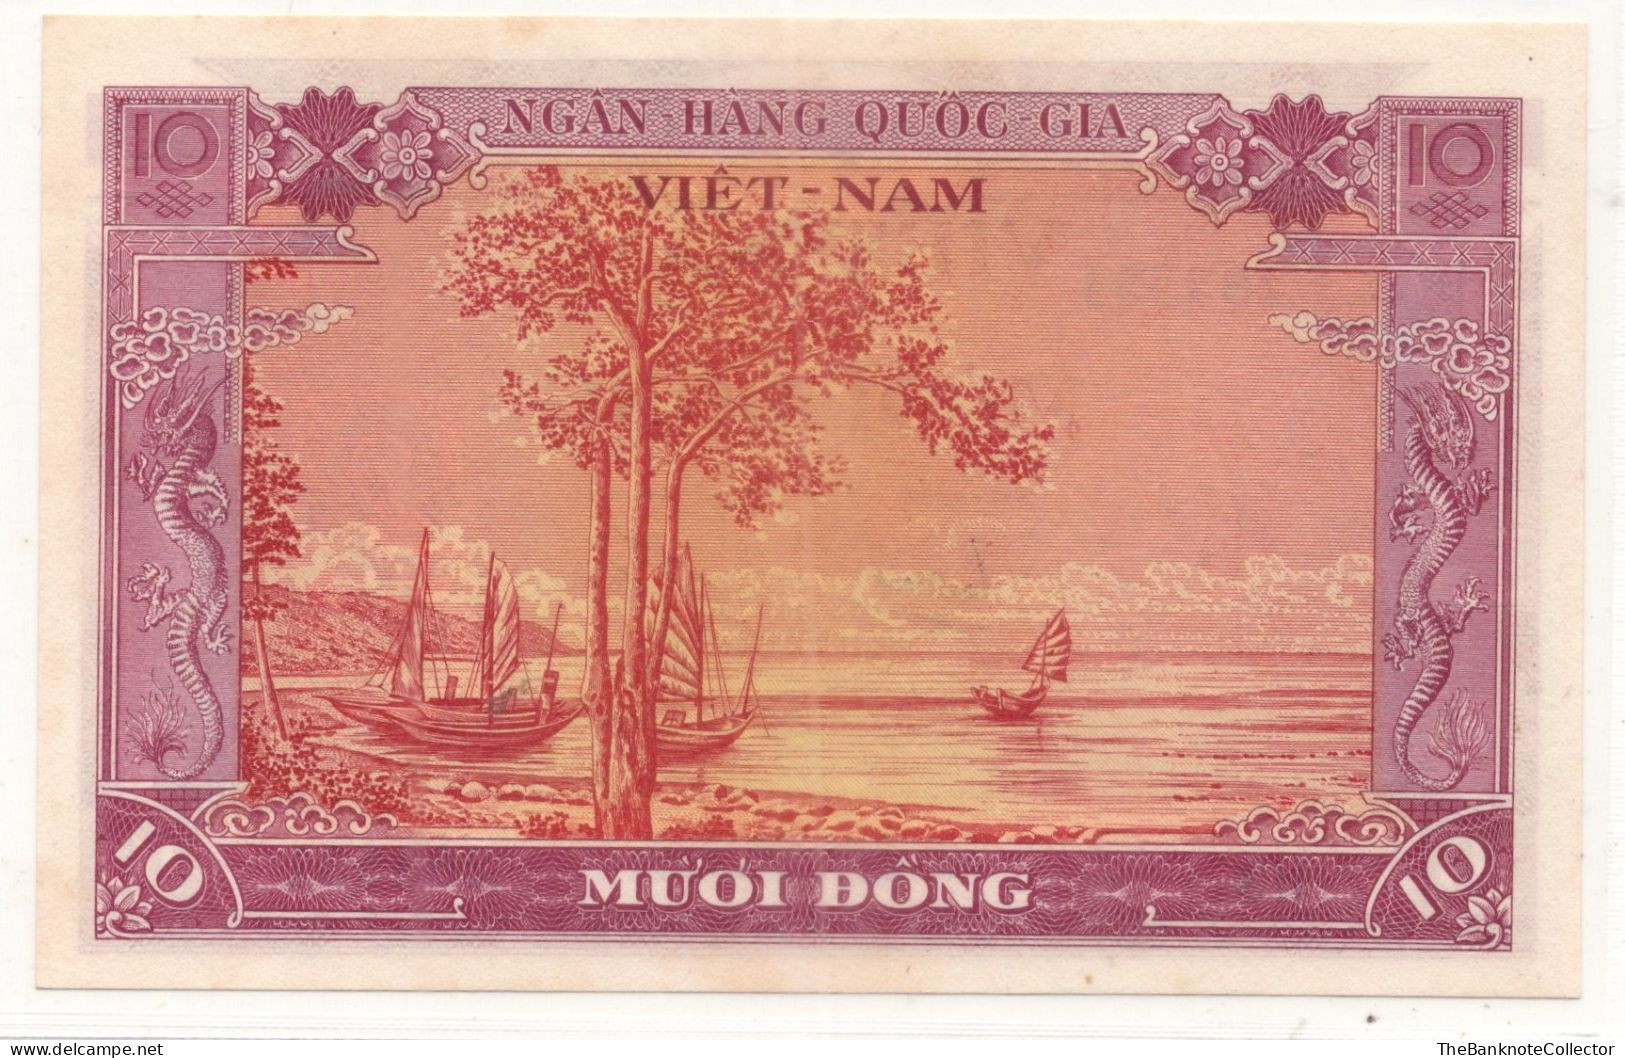 South Vietnam 10 Dong ND 1955 P-3 UNC - Vietnam